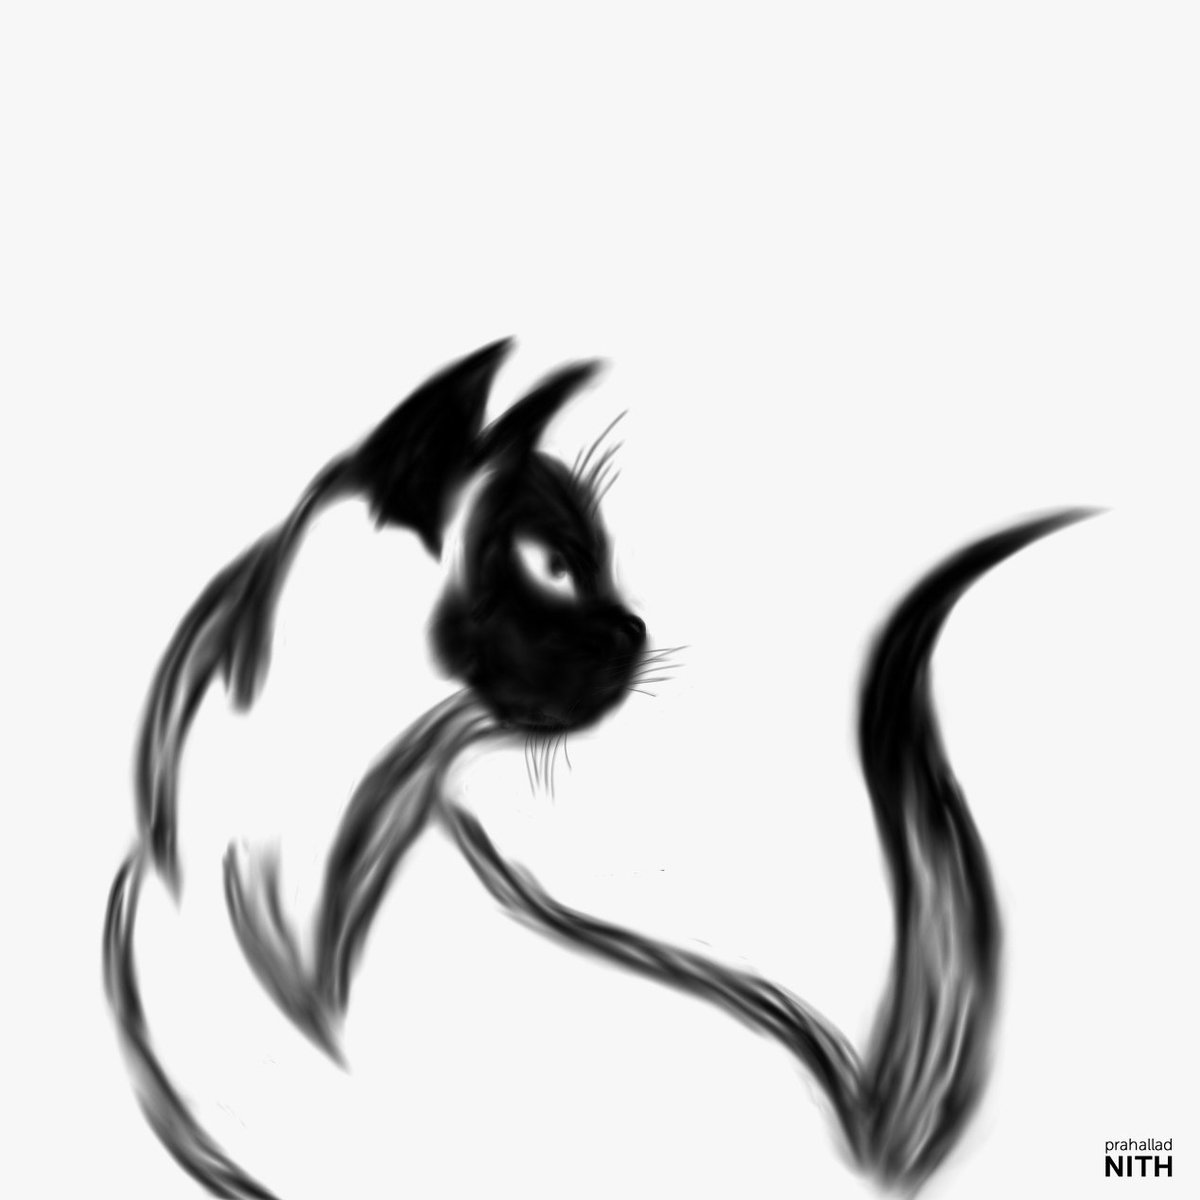 Siamese Cat Cartoon Drawing